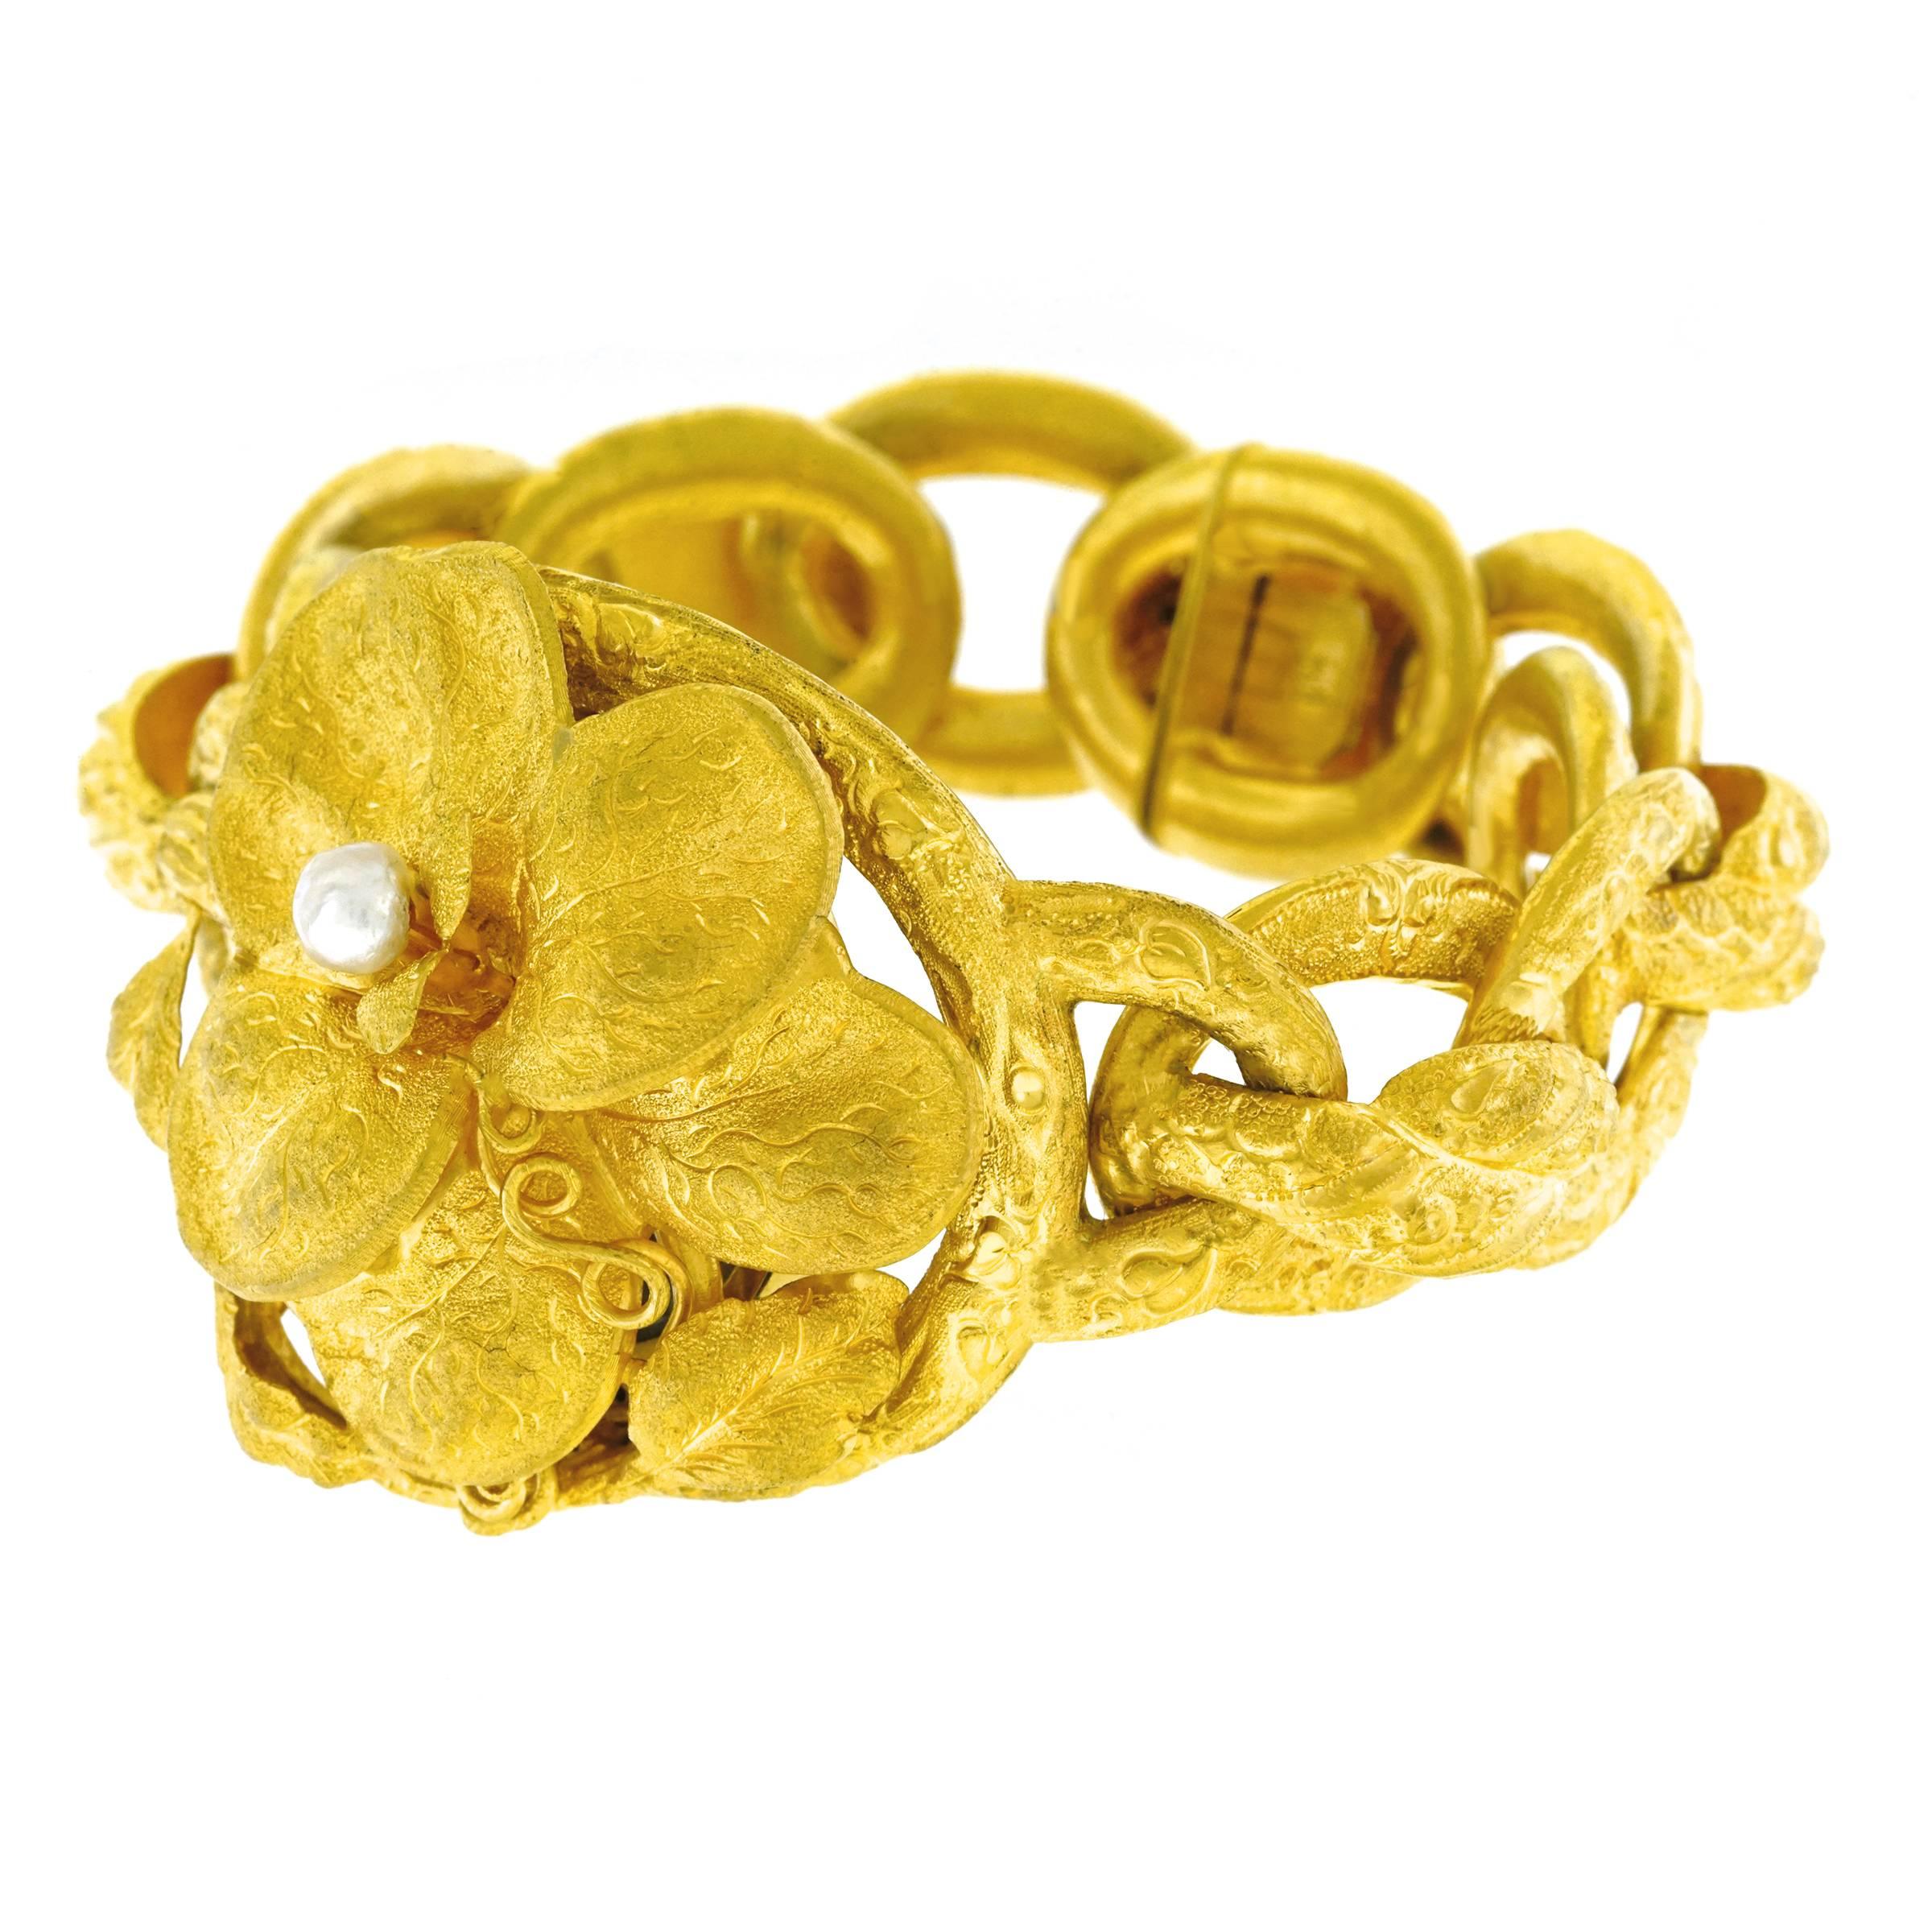 Uncut Victorian Naturalistic Gold Bracelet